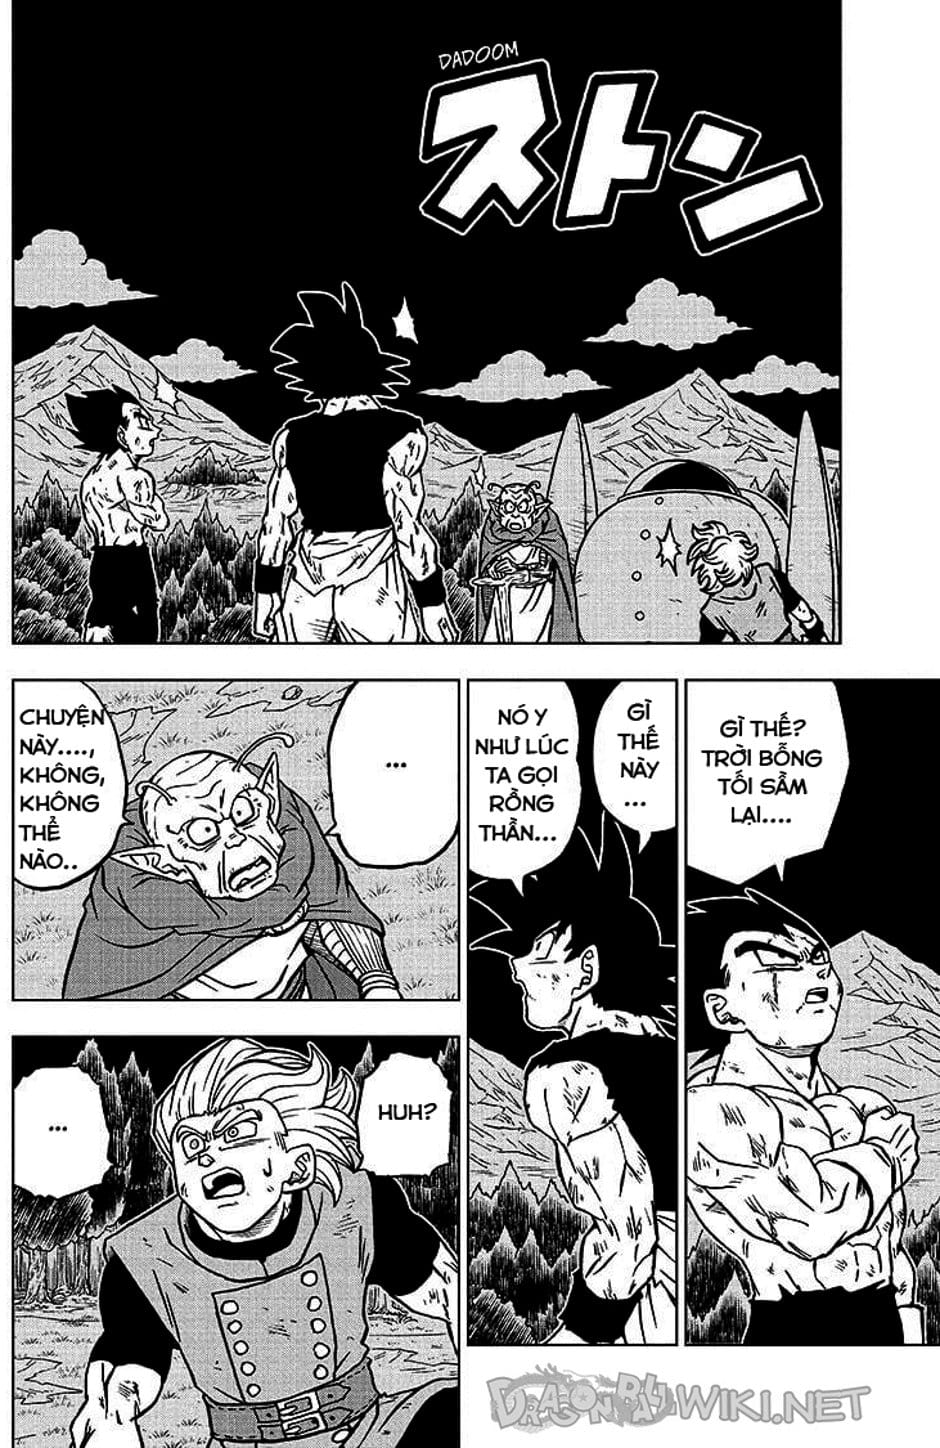 Truyện Tranh Truy Tìm Ngọc Rồng Siêu Cấp - Dragon Ball Super trang 3116